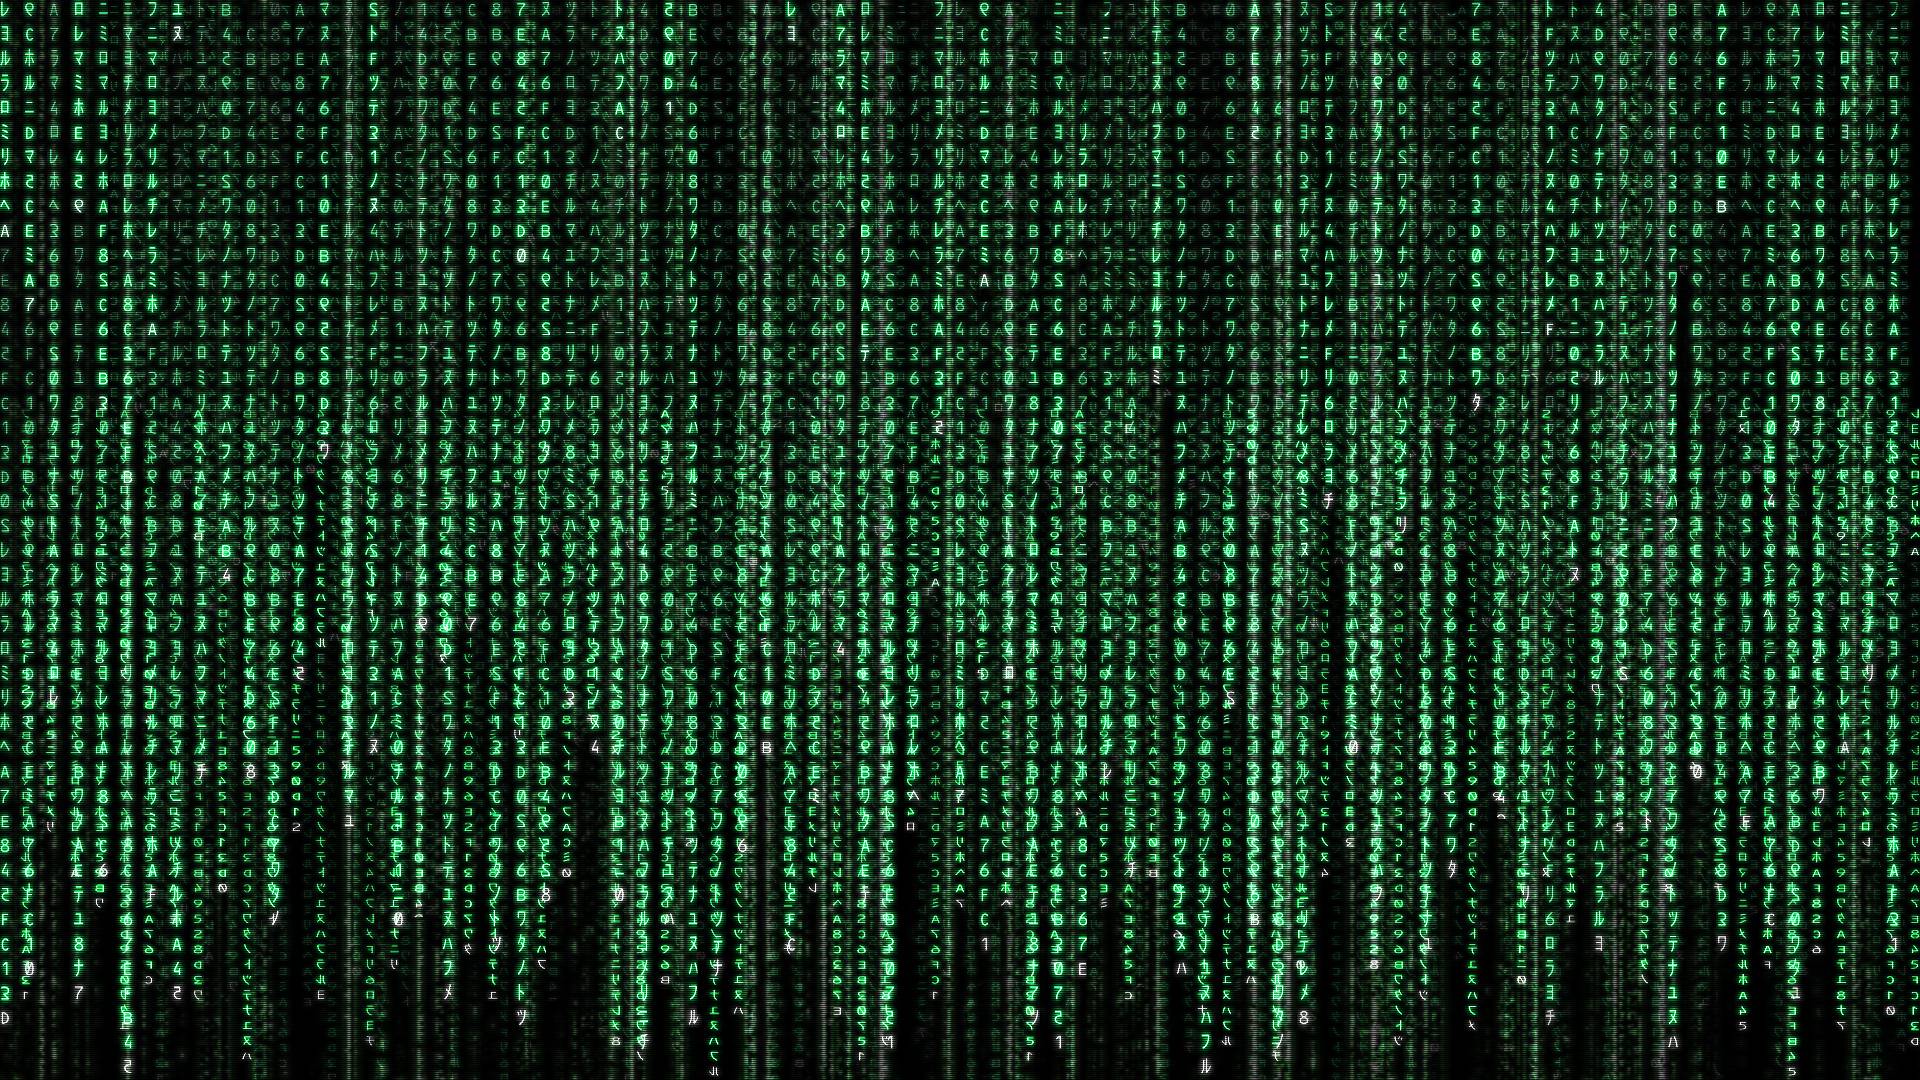 The Matrix Has You Wallpaper